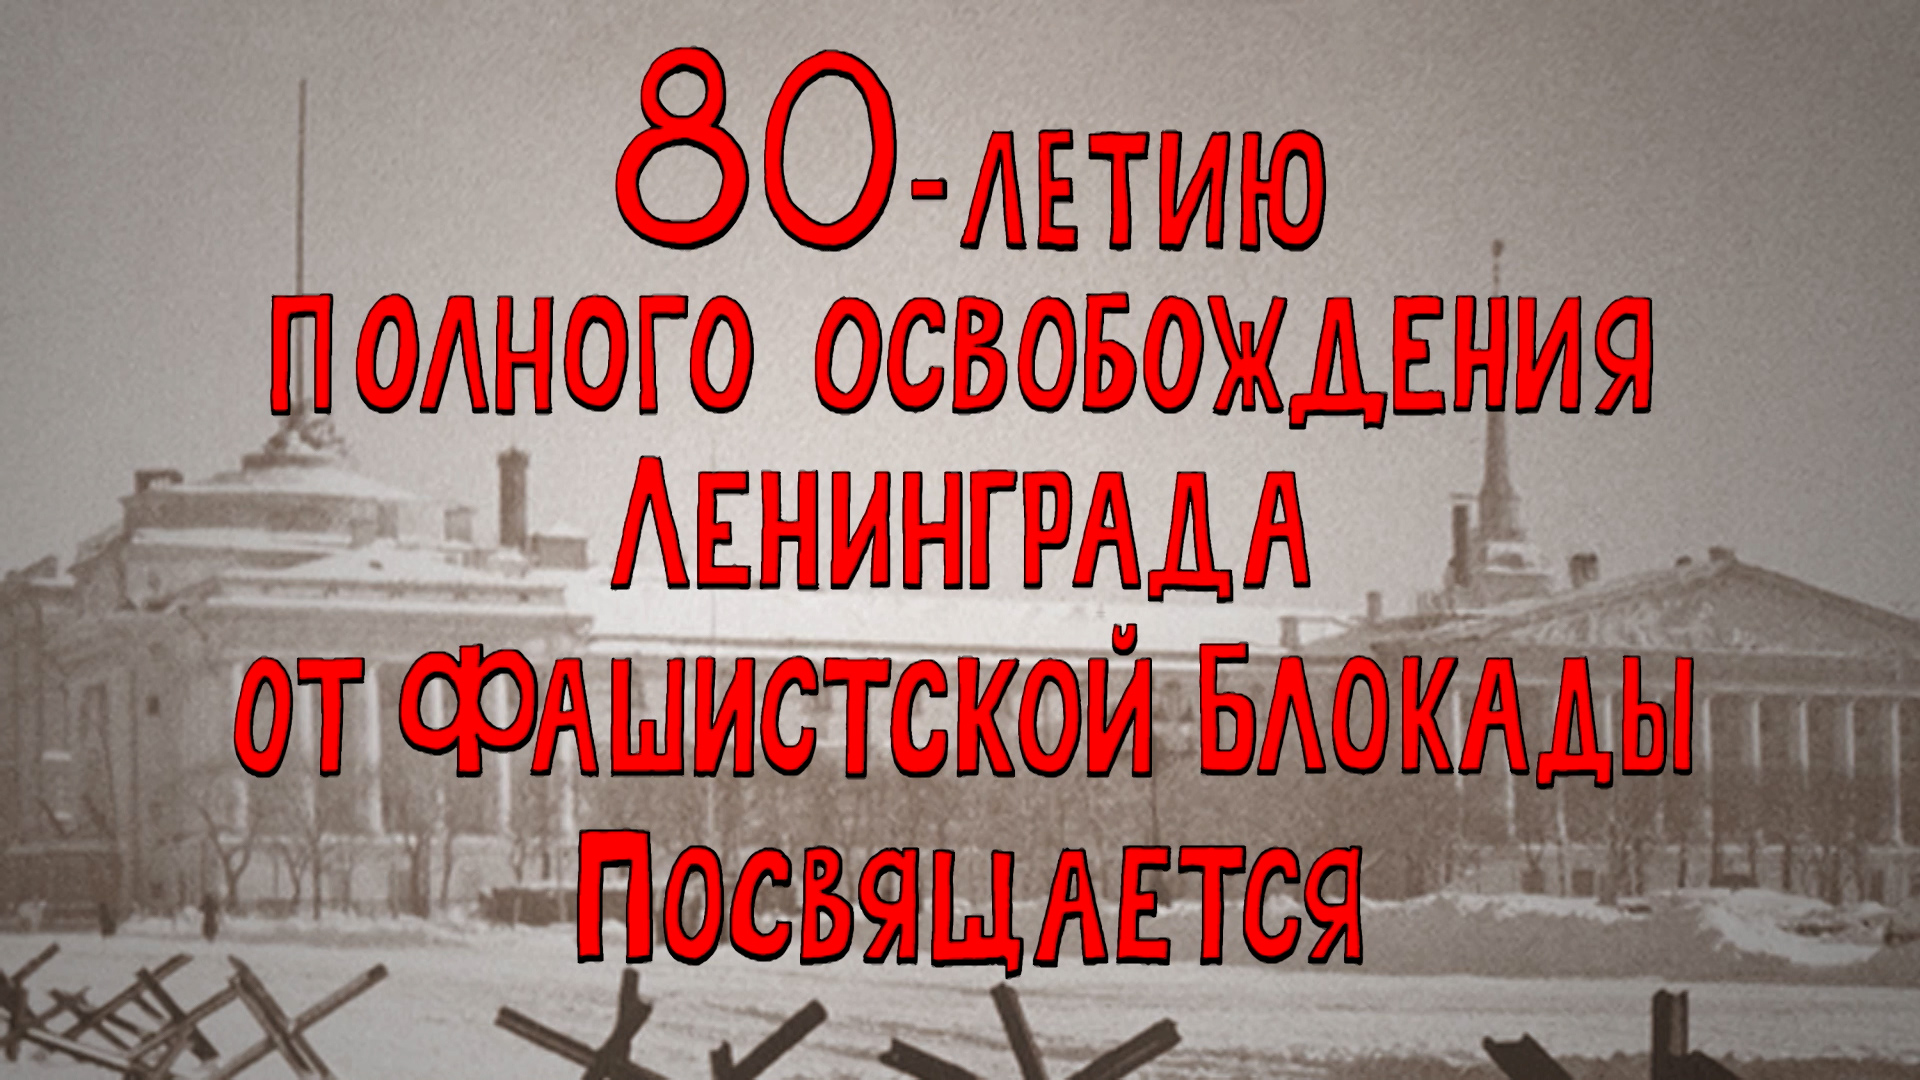 Азбука петербуржца. 80-летию полного освобождения Ленинграда от фашистской Блокады посвящается